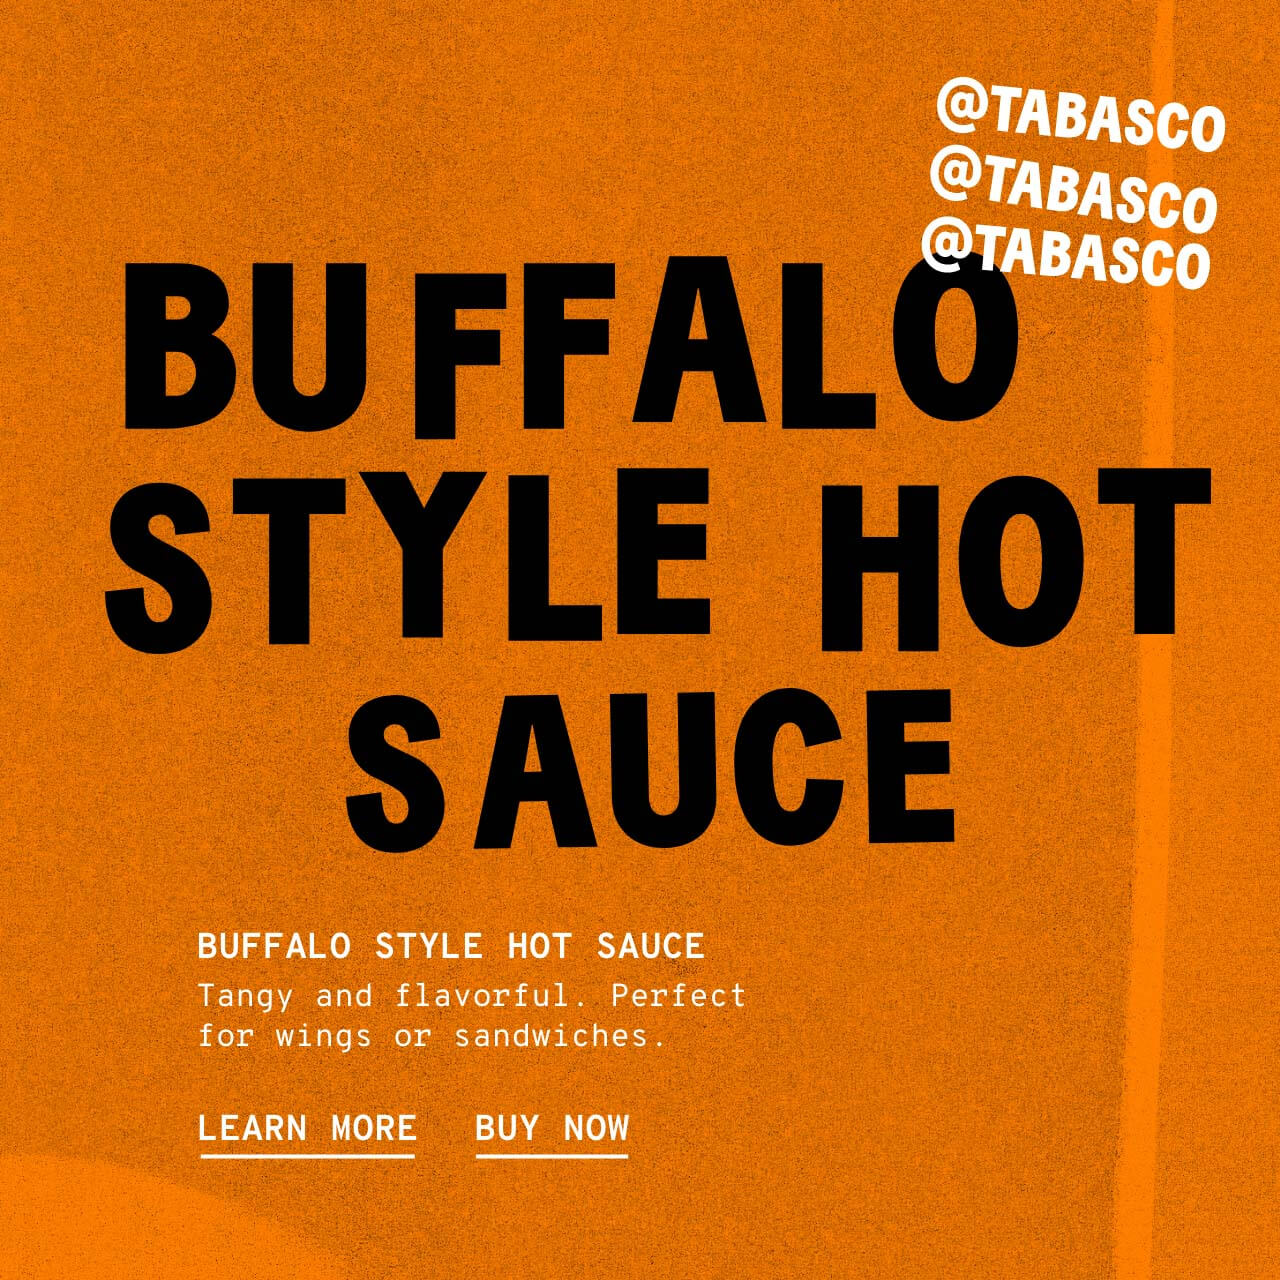 Buffalo Style Hot Sauce - Description